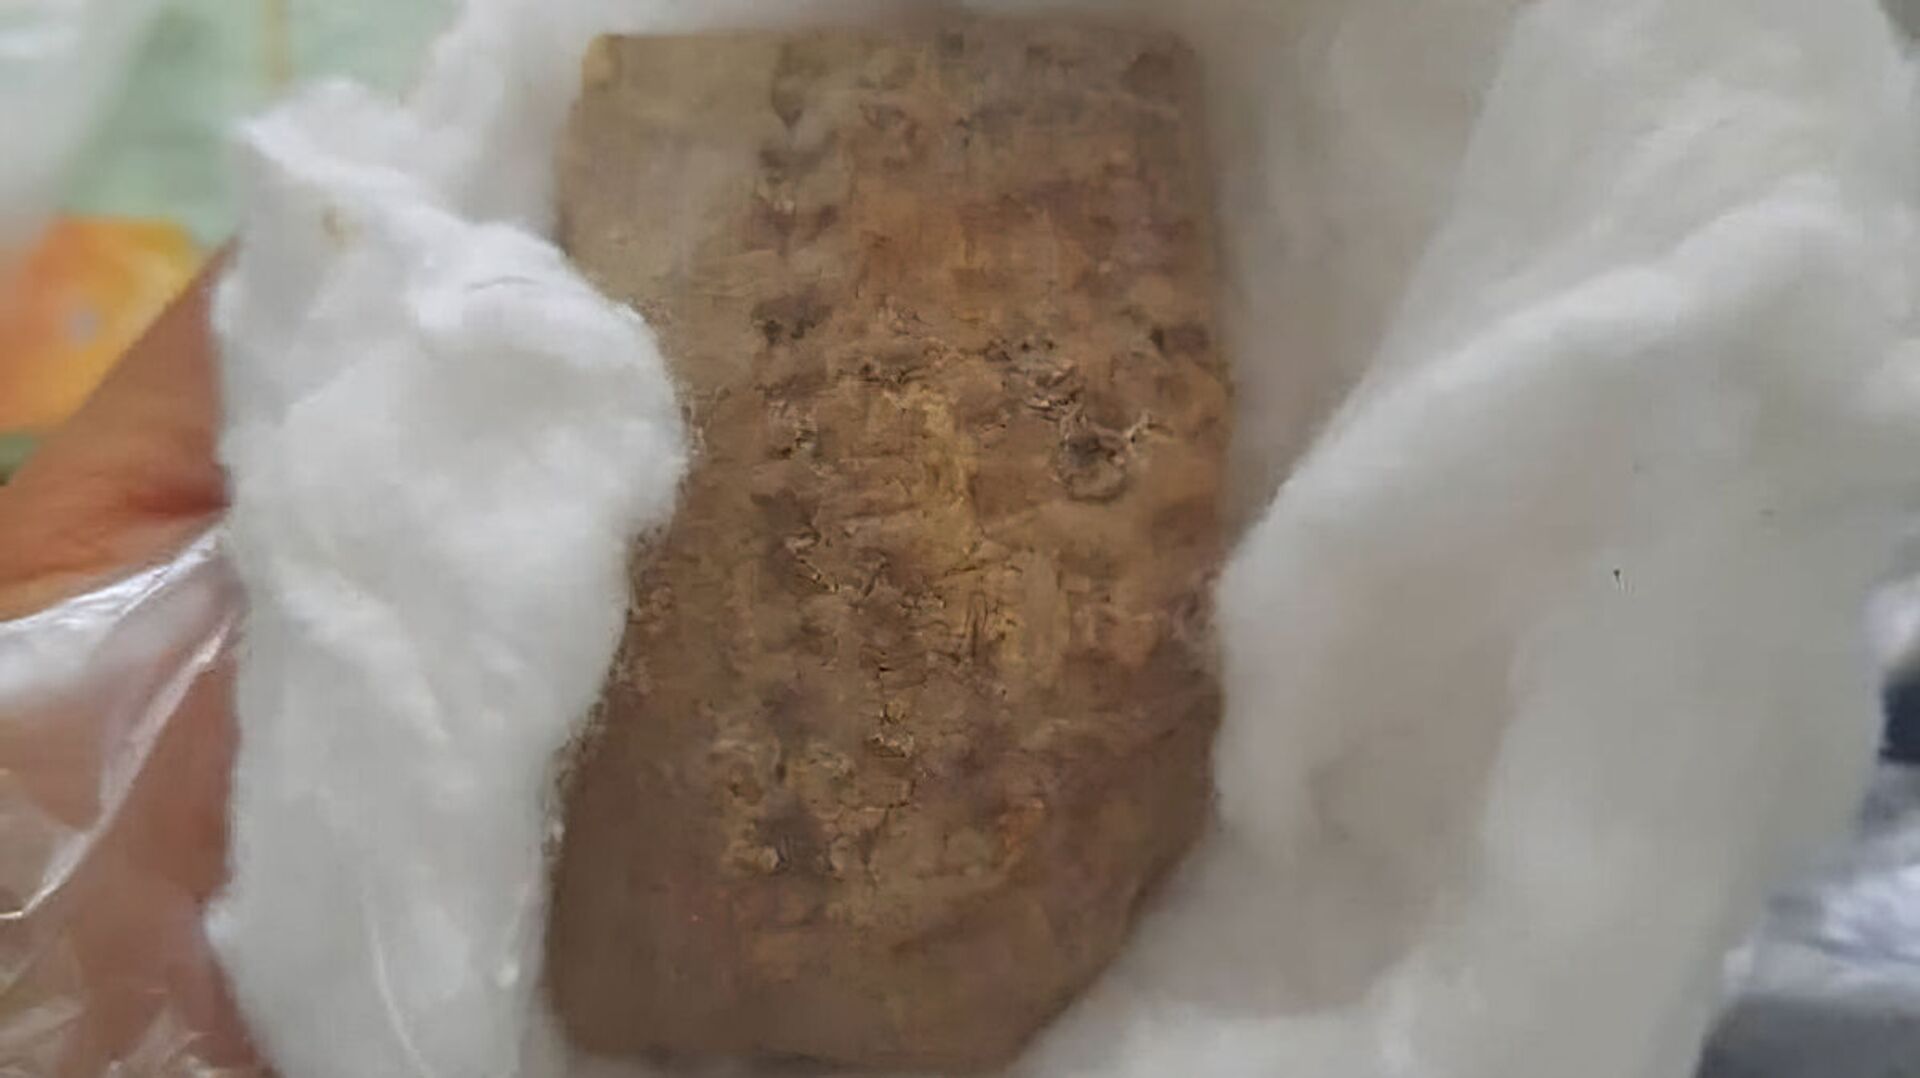 Tábua de argila, datada aproximadamente do período Elam, nos anos 2700 a.C. – 539 a.C., descoberta no sudoeste do Irã  - Sputnik Brasil, 1920, 04.12.2021